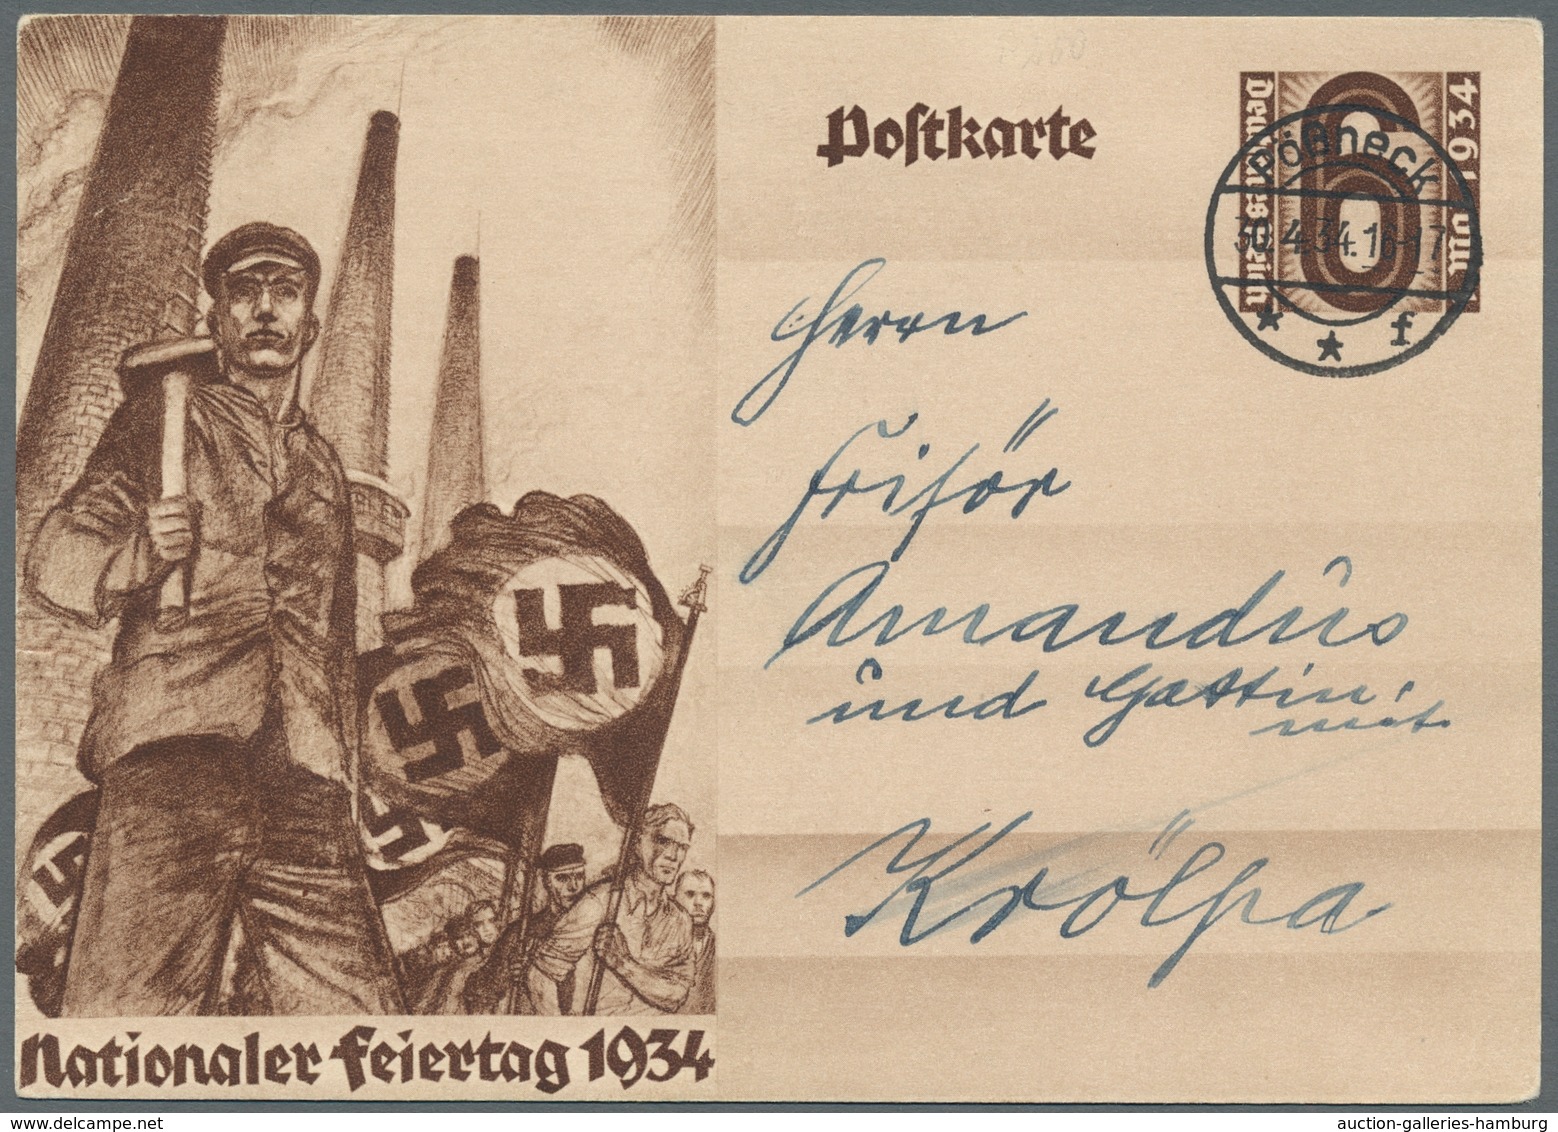 Deutsches Reich - Ganzsachen: 1931-1941, 10 GA's meist blanko, alle mit dem Ersttag Stpl. der jeweil